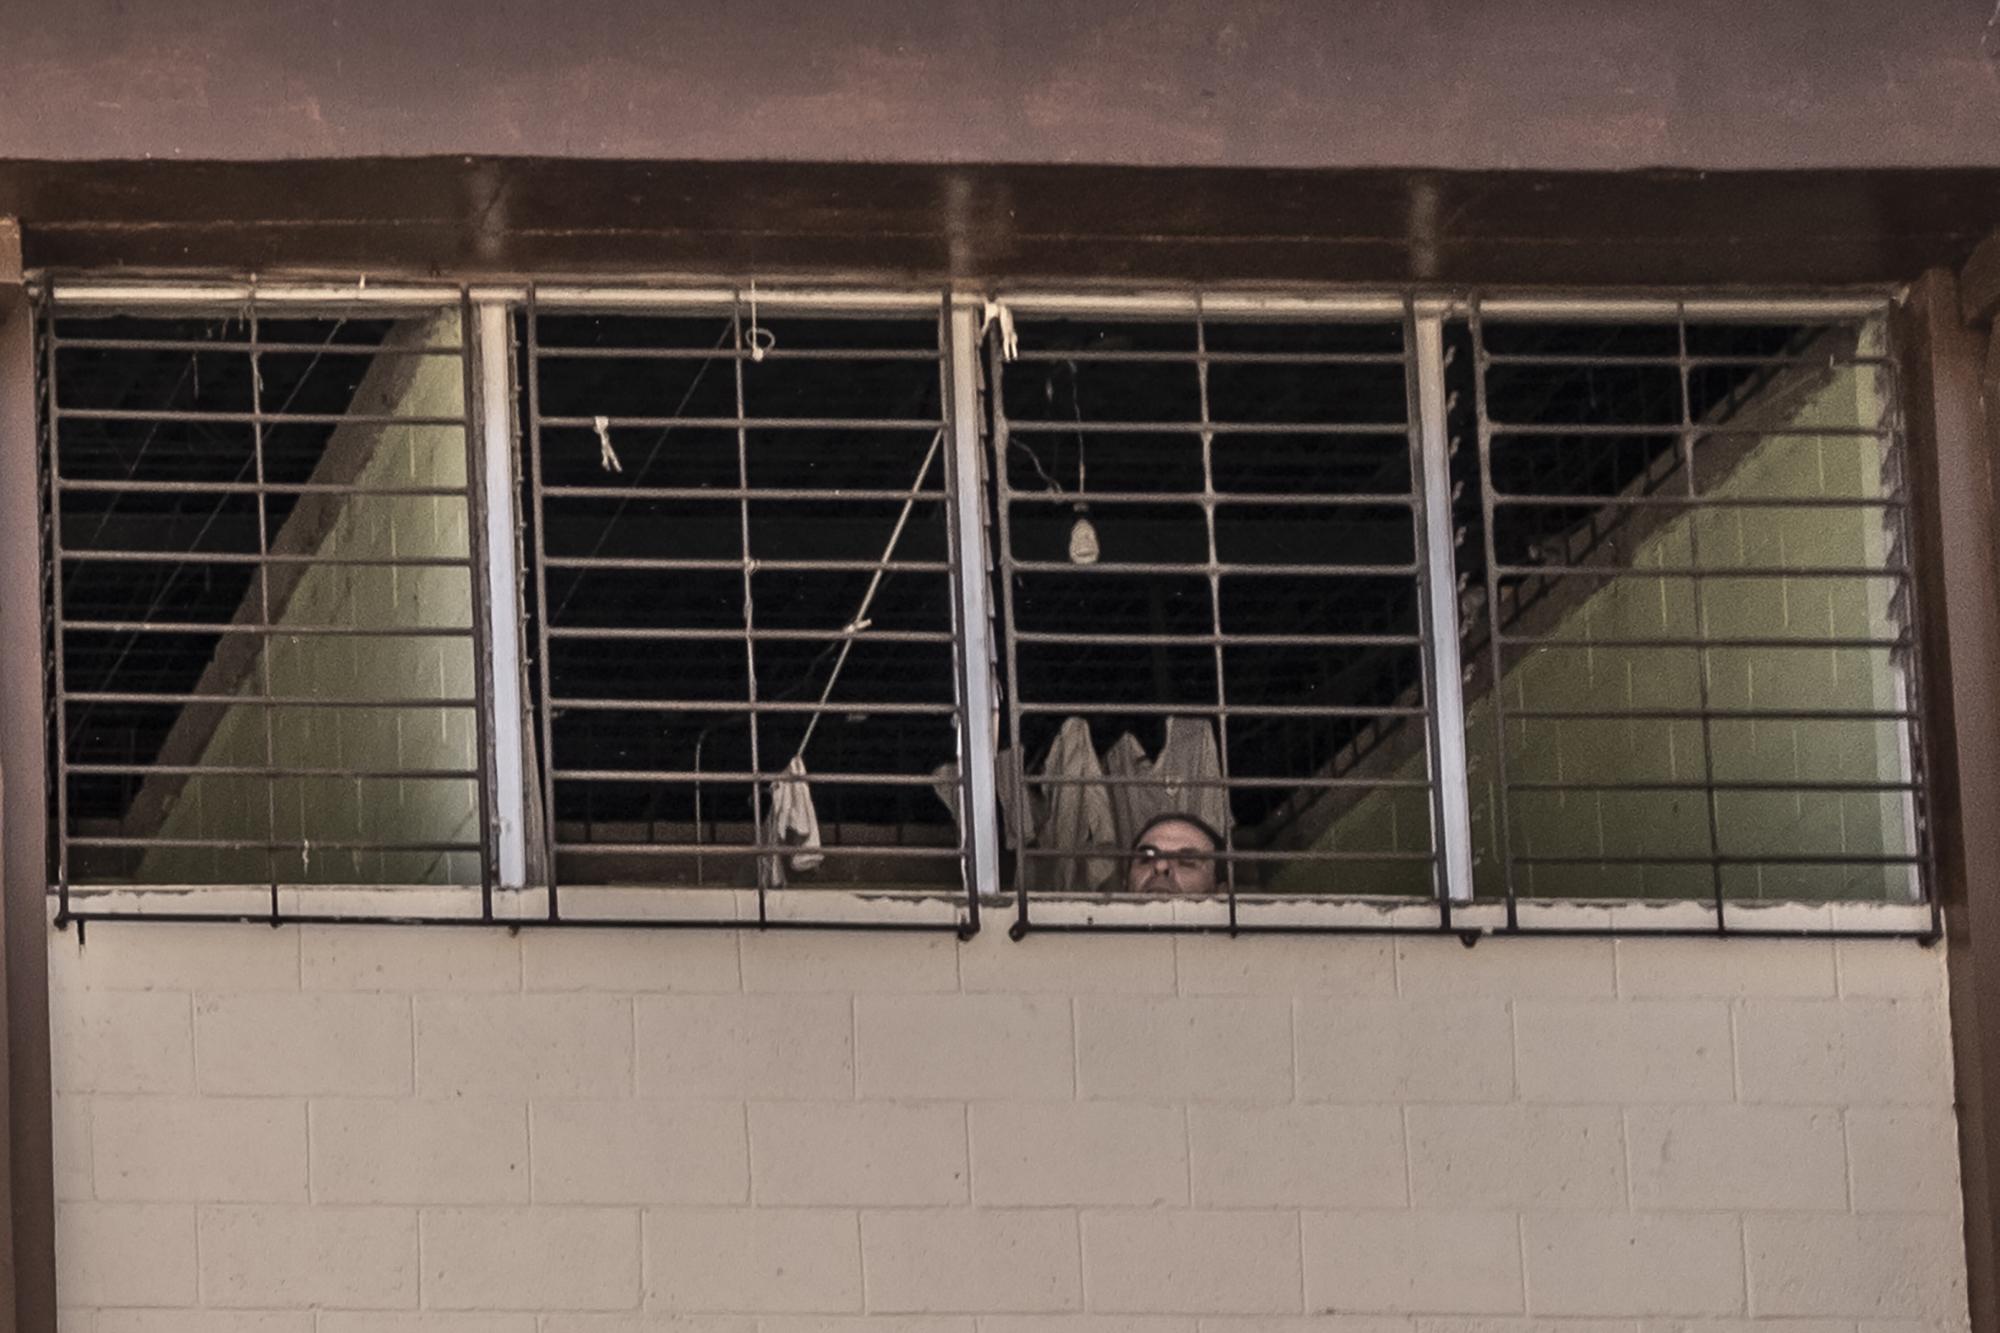 El expresidente, Elías Antonio Saca, guarda prisión desde el 17 de enero de 2017 en la celda 5 ubicada en el sector 9 de Mariona. La imagen fue captada desde el patio exterior de ese sector justo cuando Saca se asomaba desde su celda. Foto de El Faro: Carlos Barrera.